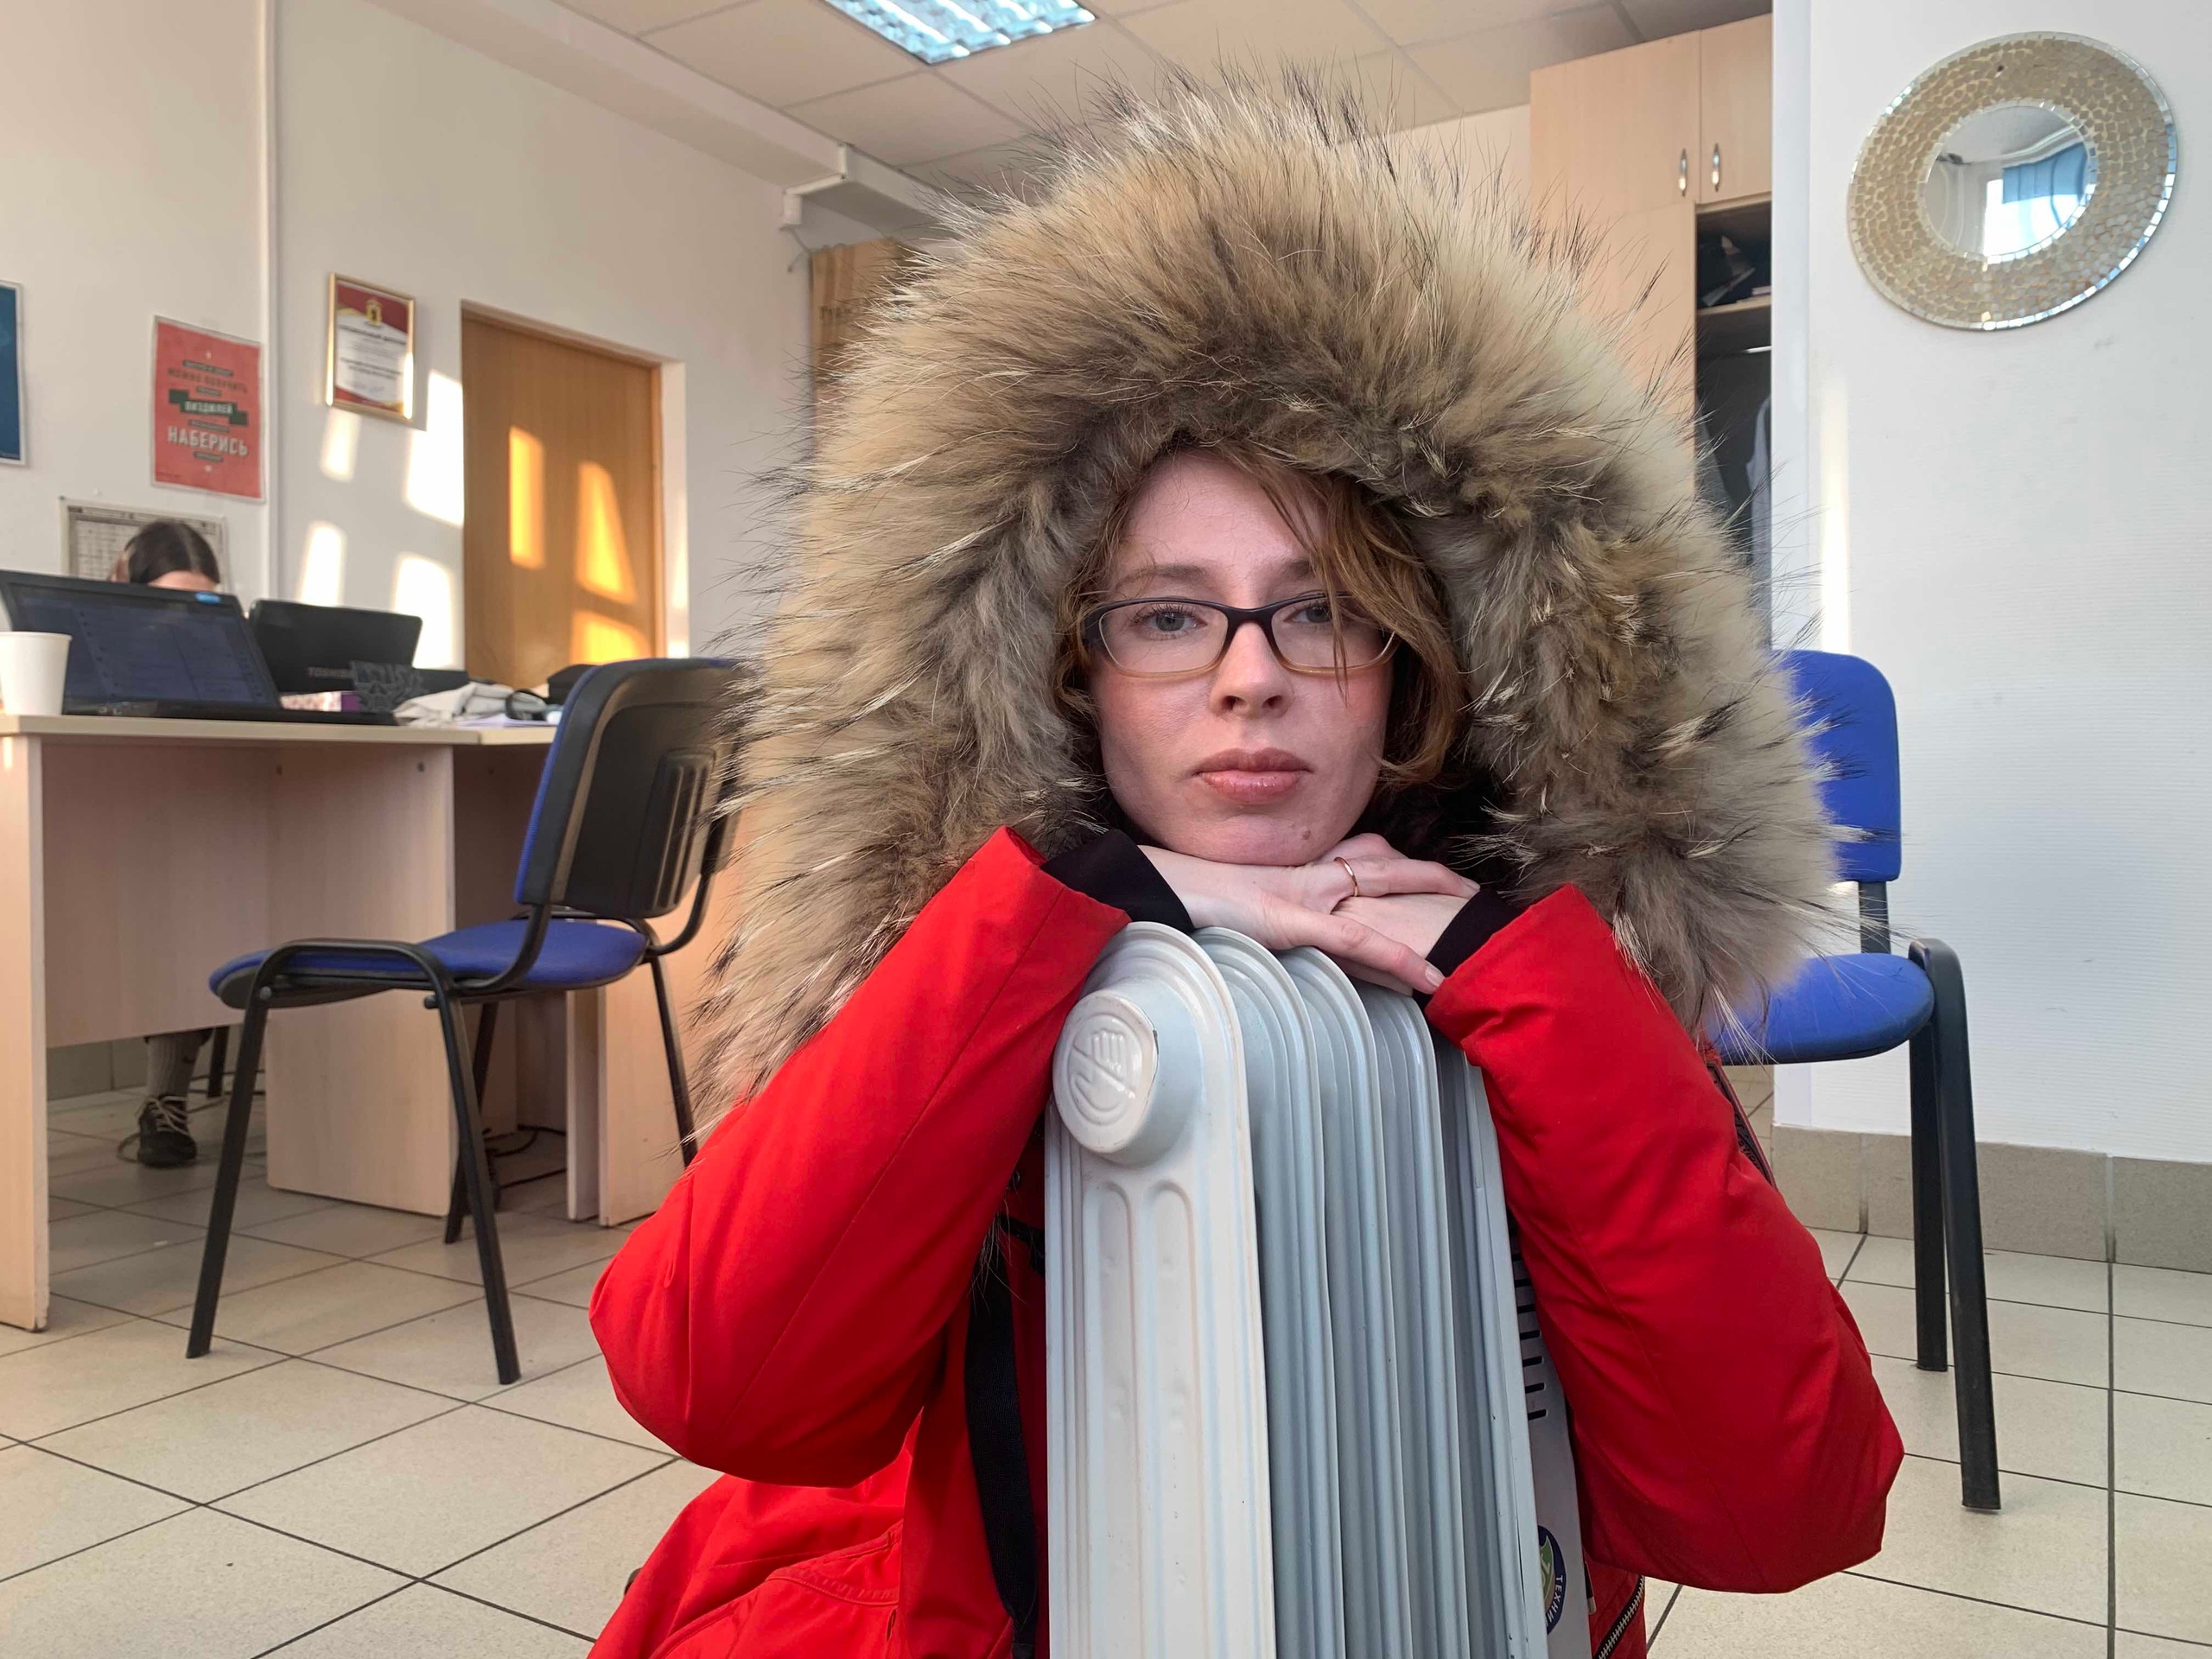  Ярославцам сделают перерасчет за отопление